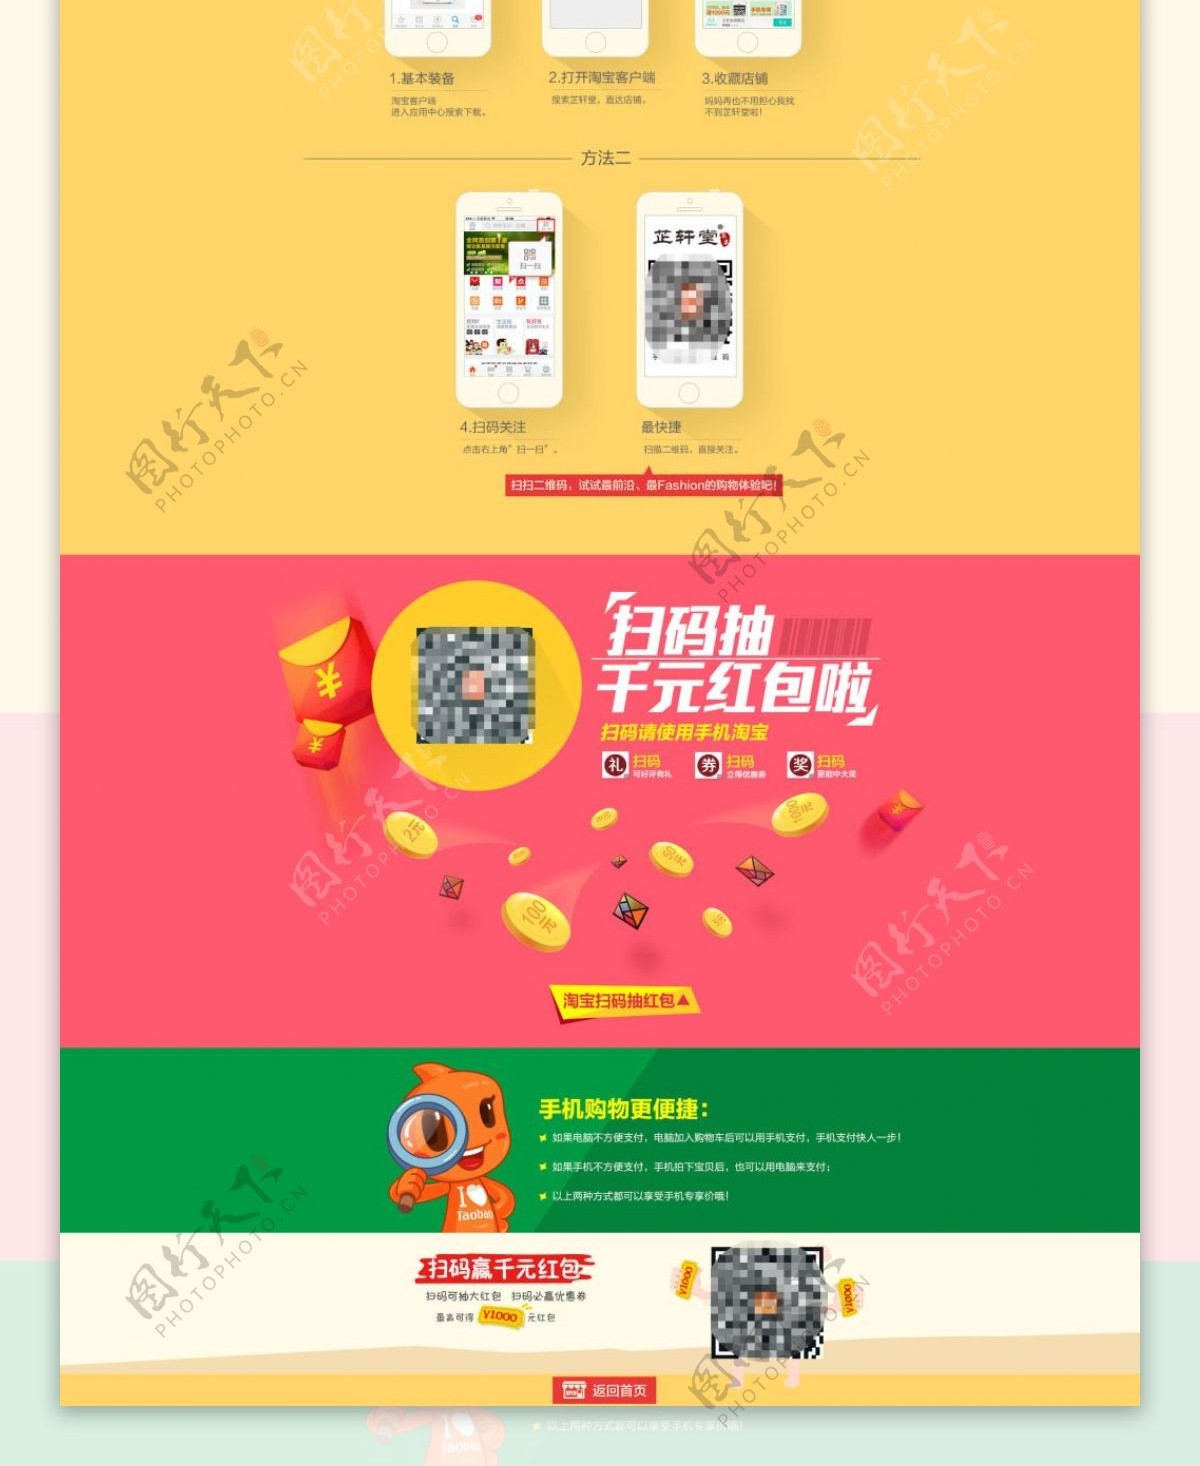 天猫店铺手机专享宣传页面海报